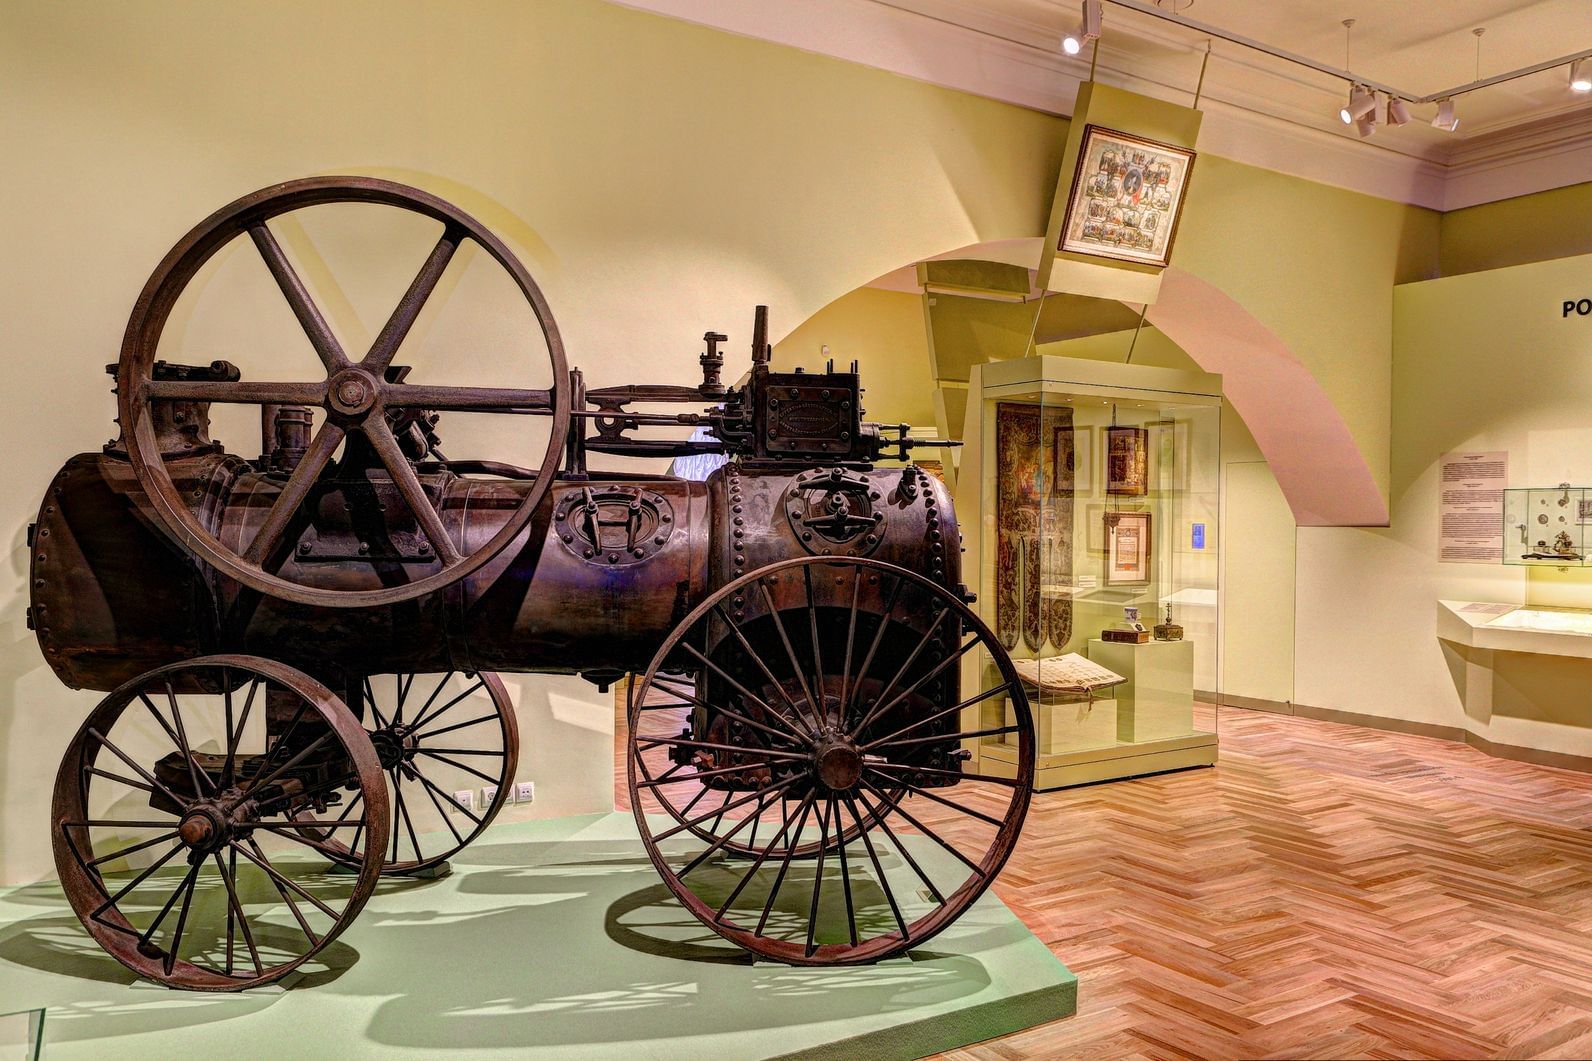 Музей истории россии москва